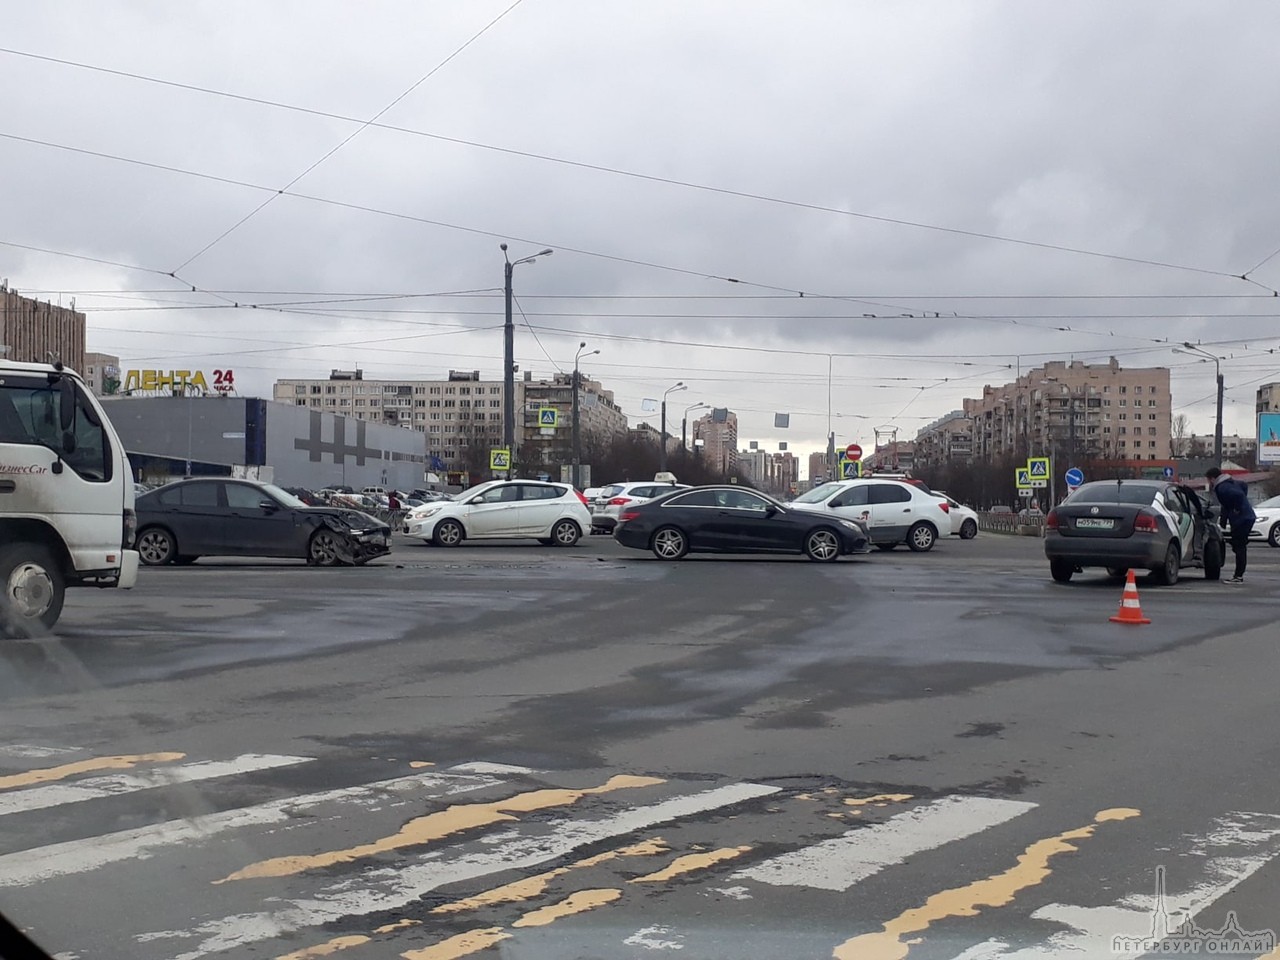 На перекрёстке Димитрова и Бухарестской, каршеринг делимобиля сразился с БМВ. ✊